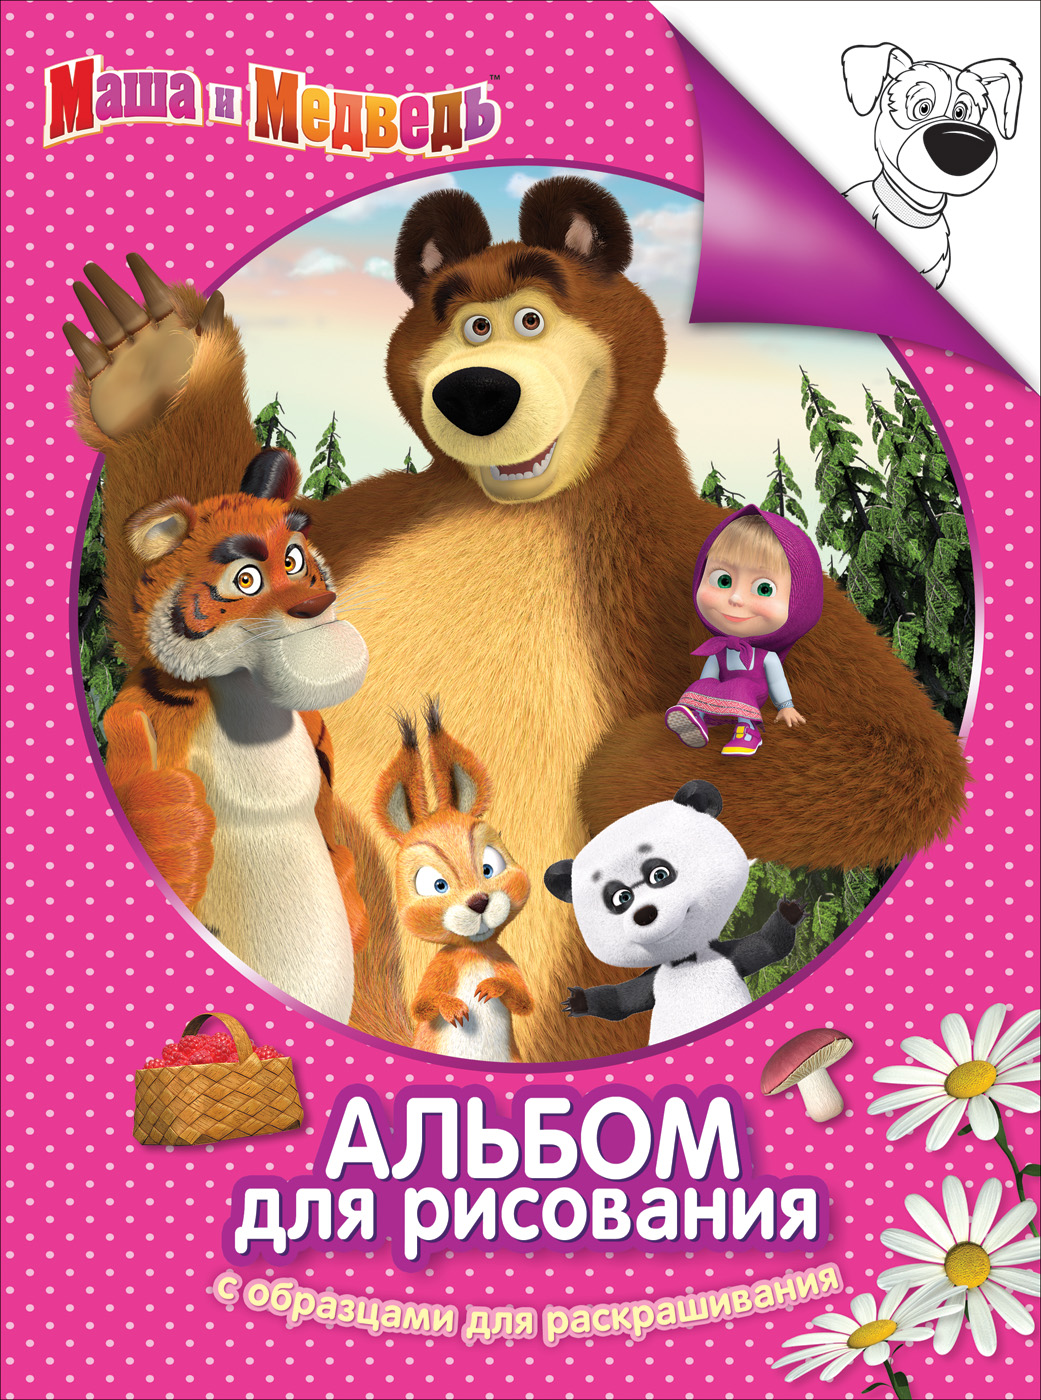 Альбом-раскраска 30915 Маша и Медведь розов Росмэн - Санкт-Петербург 